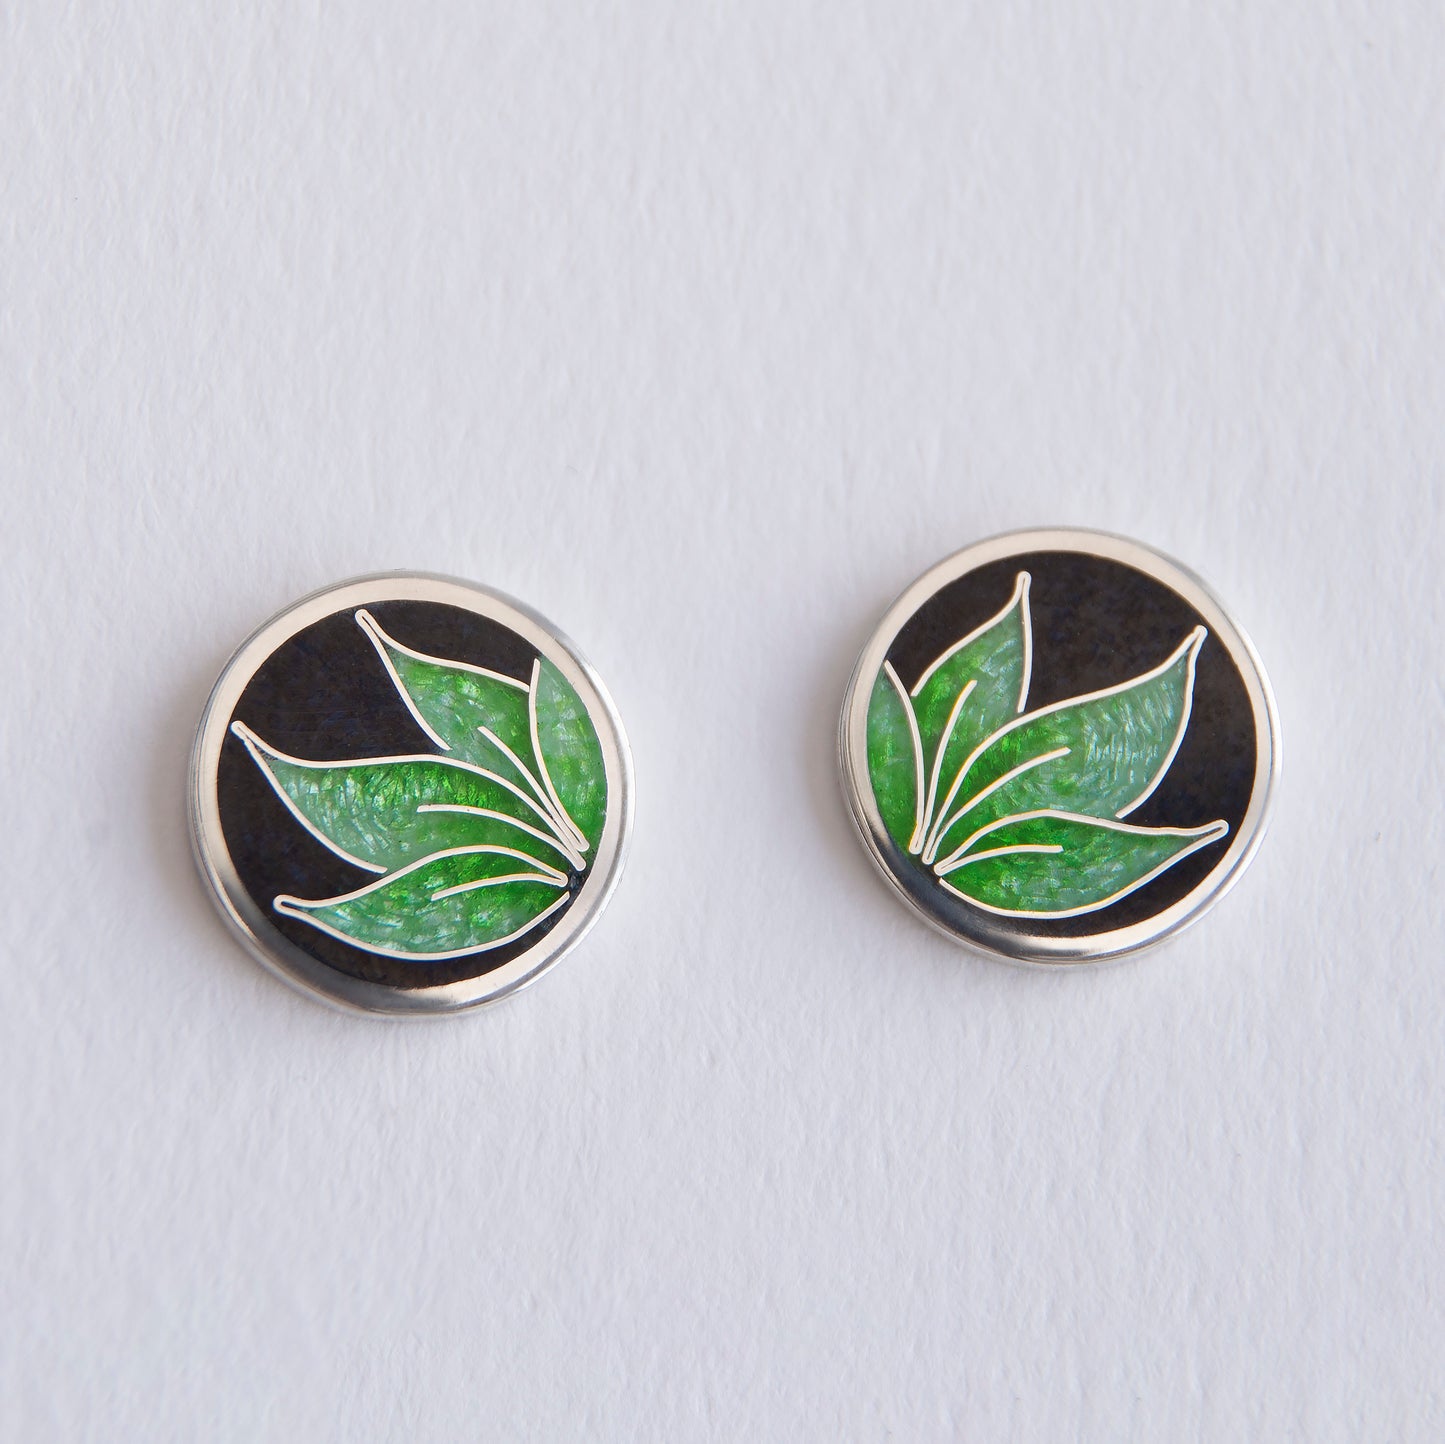 Cloisonné Enamel Earrings With Grass Pattern